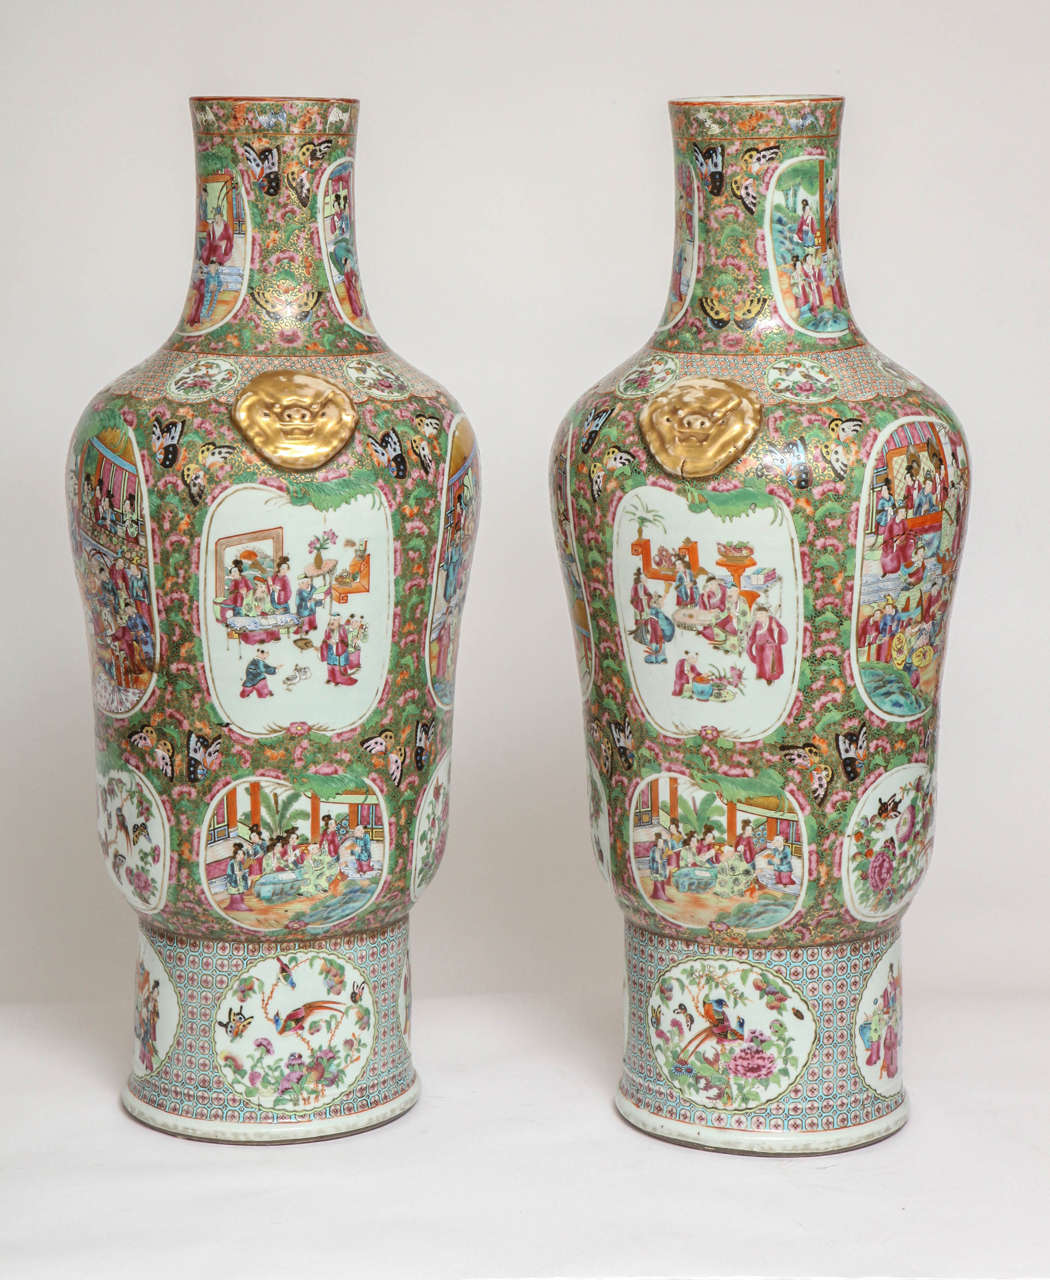 Ein ungewöhnliches Paar von großen chinesischen Export Kanton famille rose tausend Schmetterling Porzellanvasen. Die Vase hat eine sehr ungewöhnliche Form und wurde höchstwahrscheinlich auf besondere Bestellung hergestellt. Die gesamte Vase ist mit